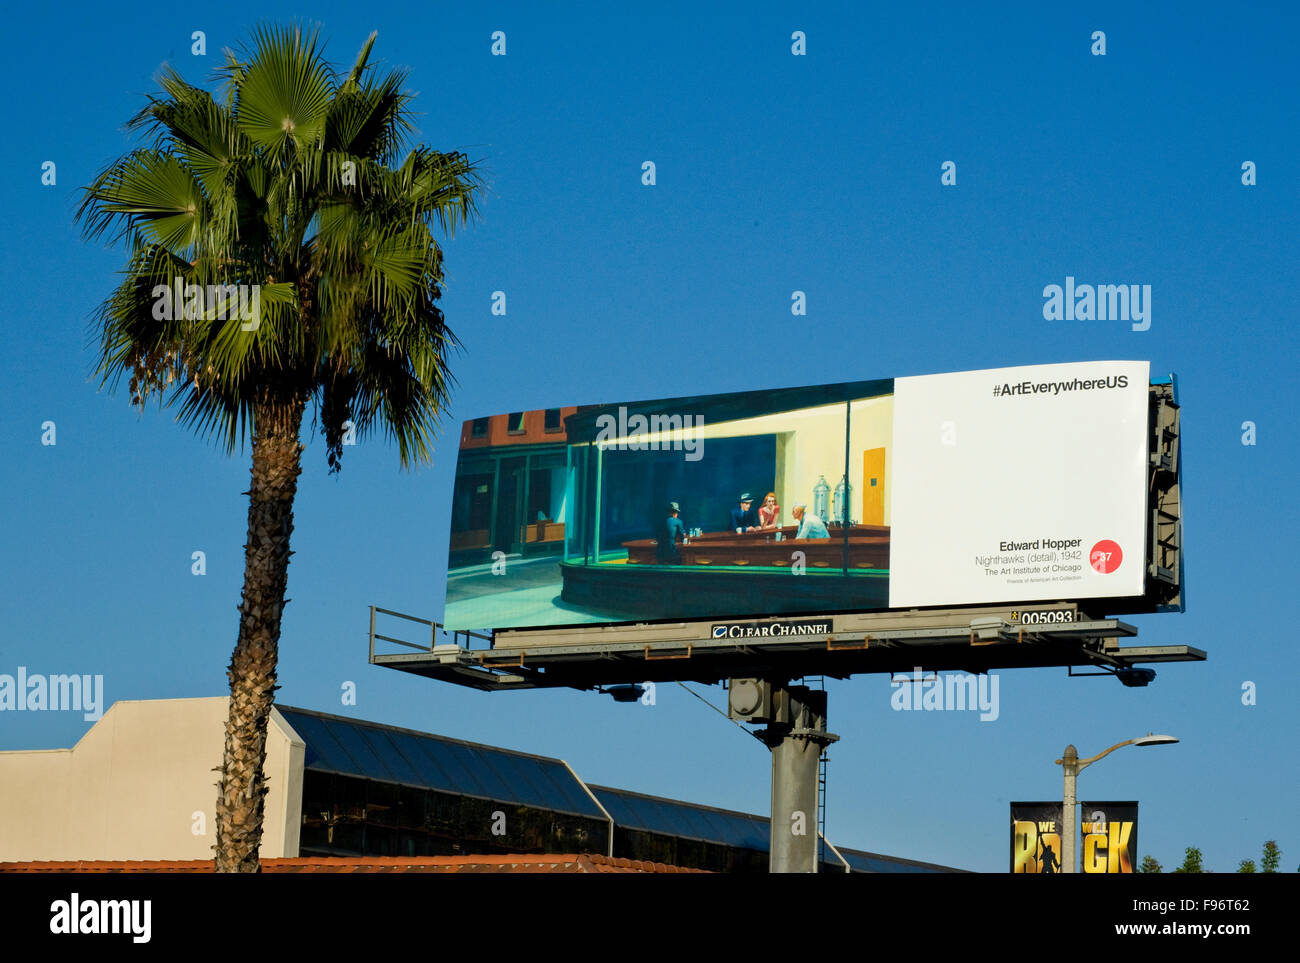 Edward Hopper bildende Kunst Malerei wird auf einer Plakatwand in Los Angeles, Kalifornien während der Veranstaltung Kunst überall wiedergegeben. Stockfoto